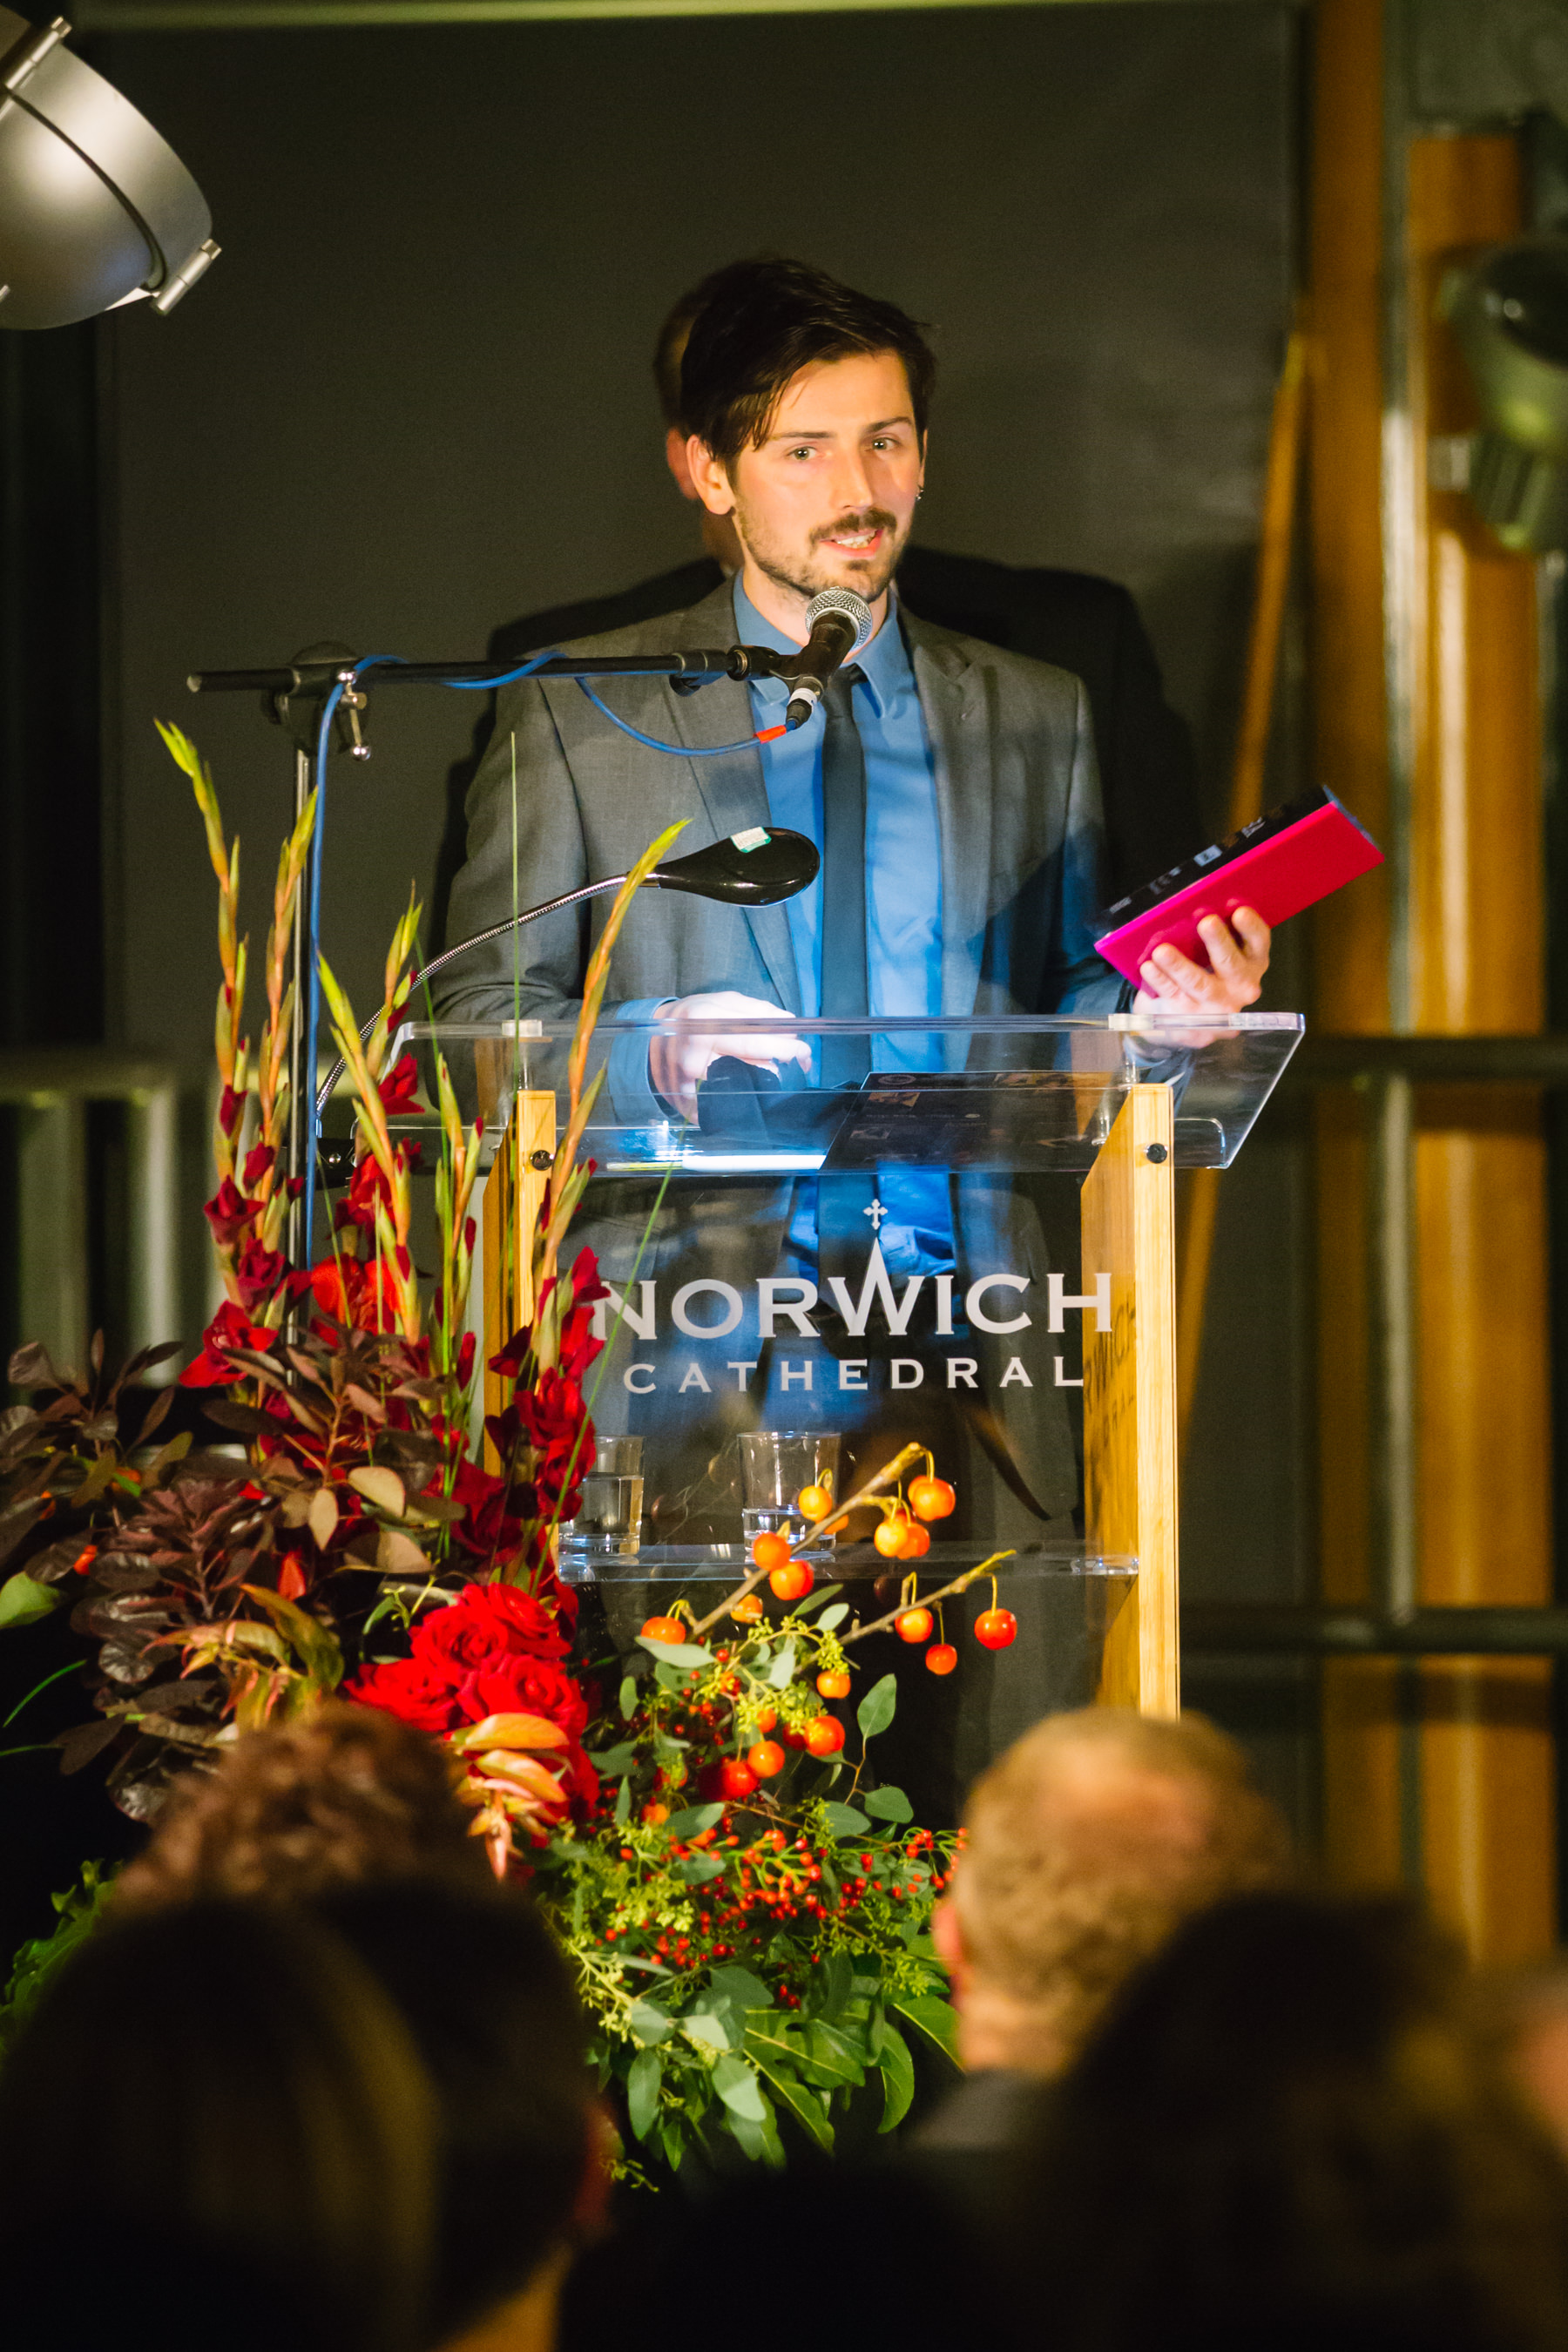 Norfolk Arts Awards 2013